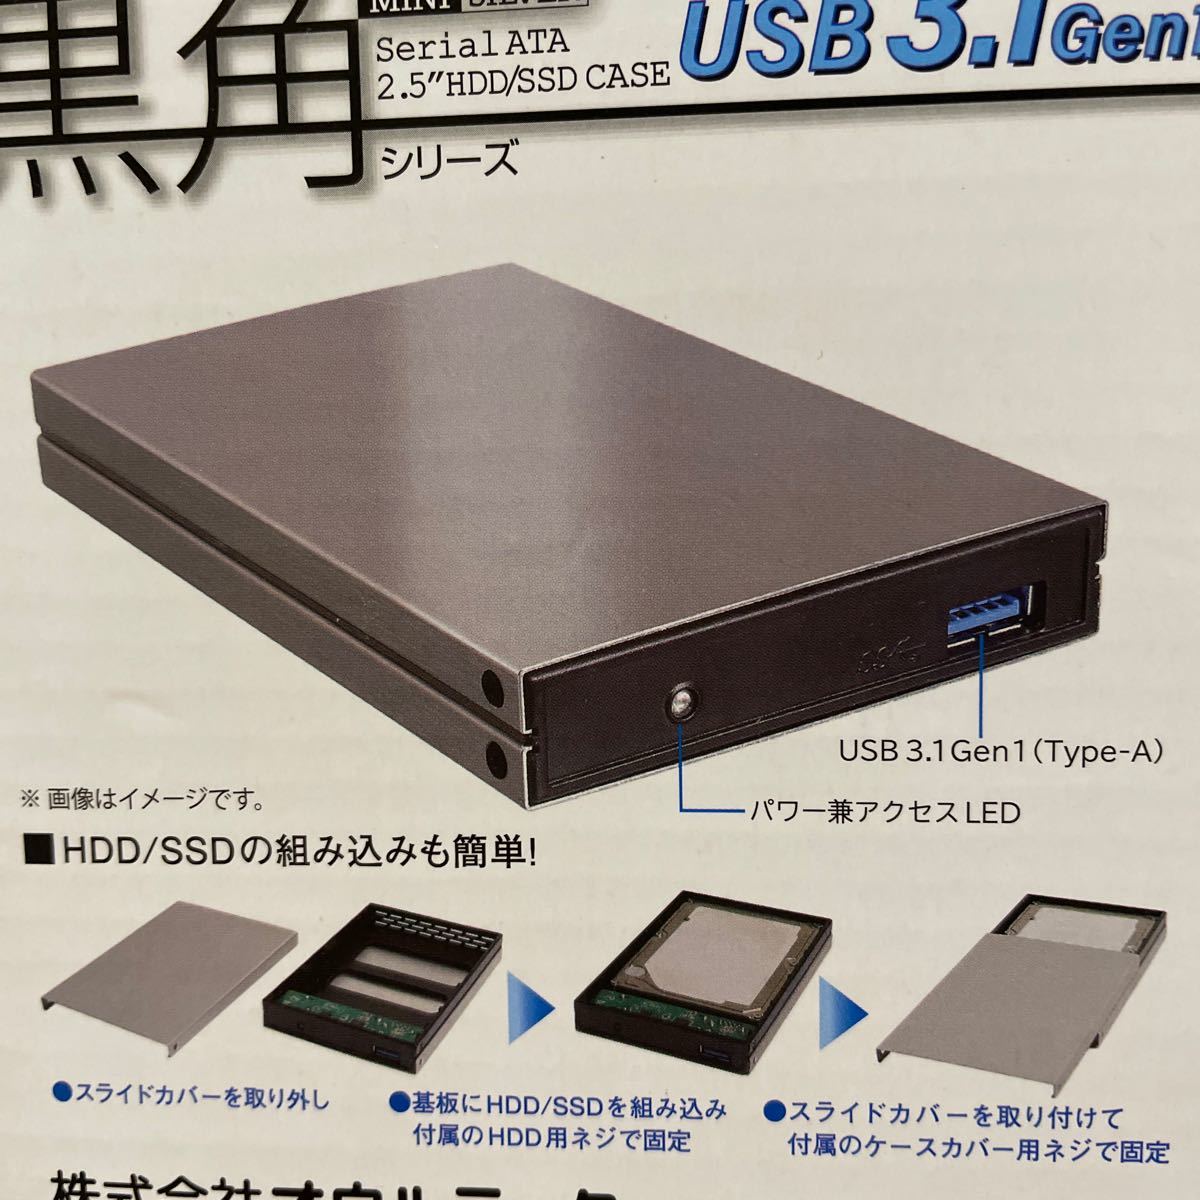 オウルテック 黒角  アルミ　2.5インチ SSD/HDD ケース　USB3.1 12.5mm厚HDD・12.8mm厚SSD対応